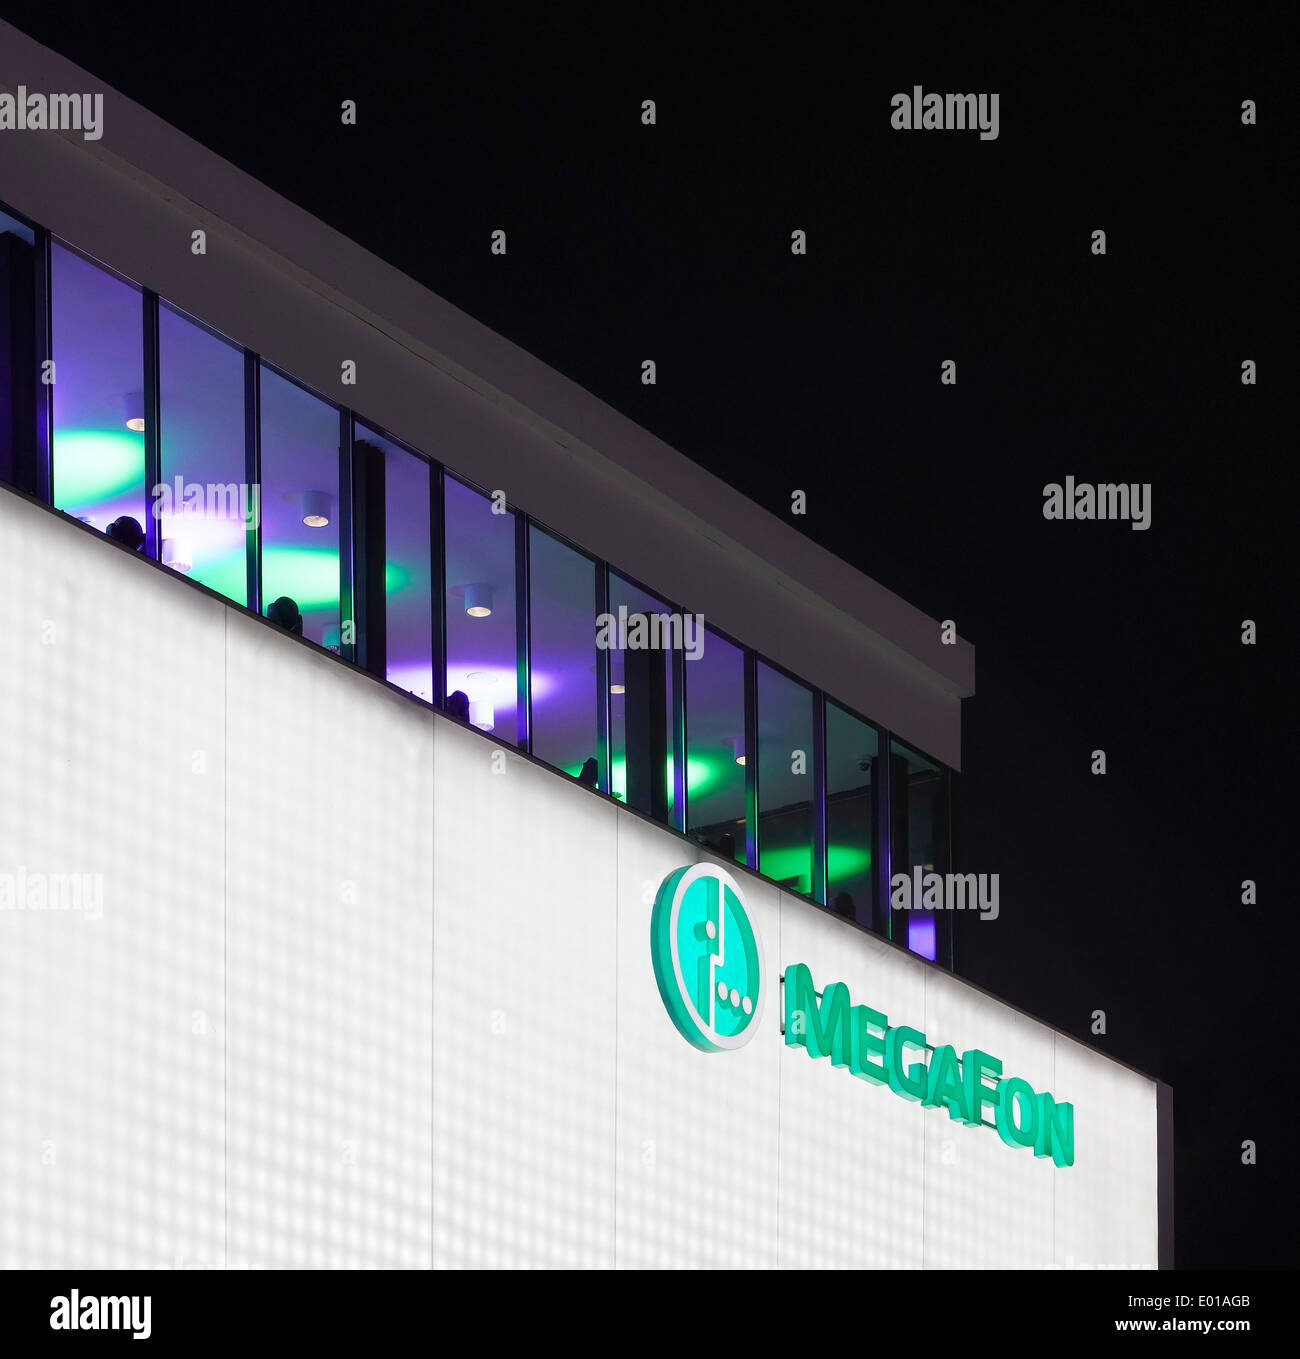 MegaFon, Winterspiele in Sotschi 2014 Sotschi, Russland. Architekt: Asif Khan, 2014. Seitliche Fassade mit Beschilderung in der Nacht. Stockfoto